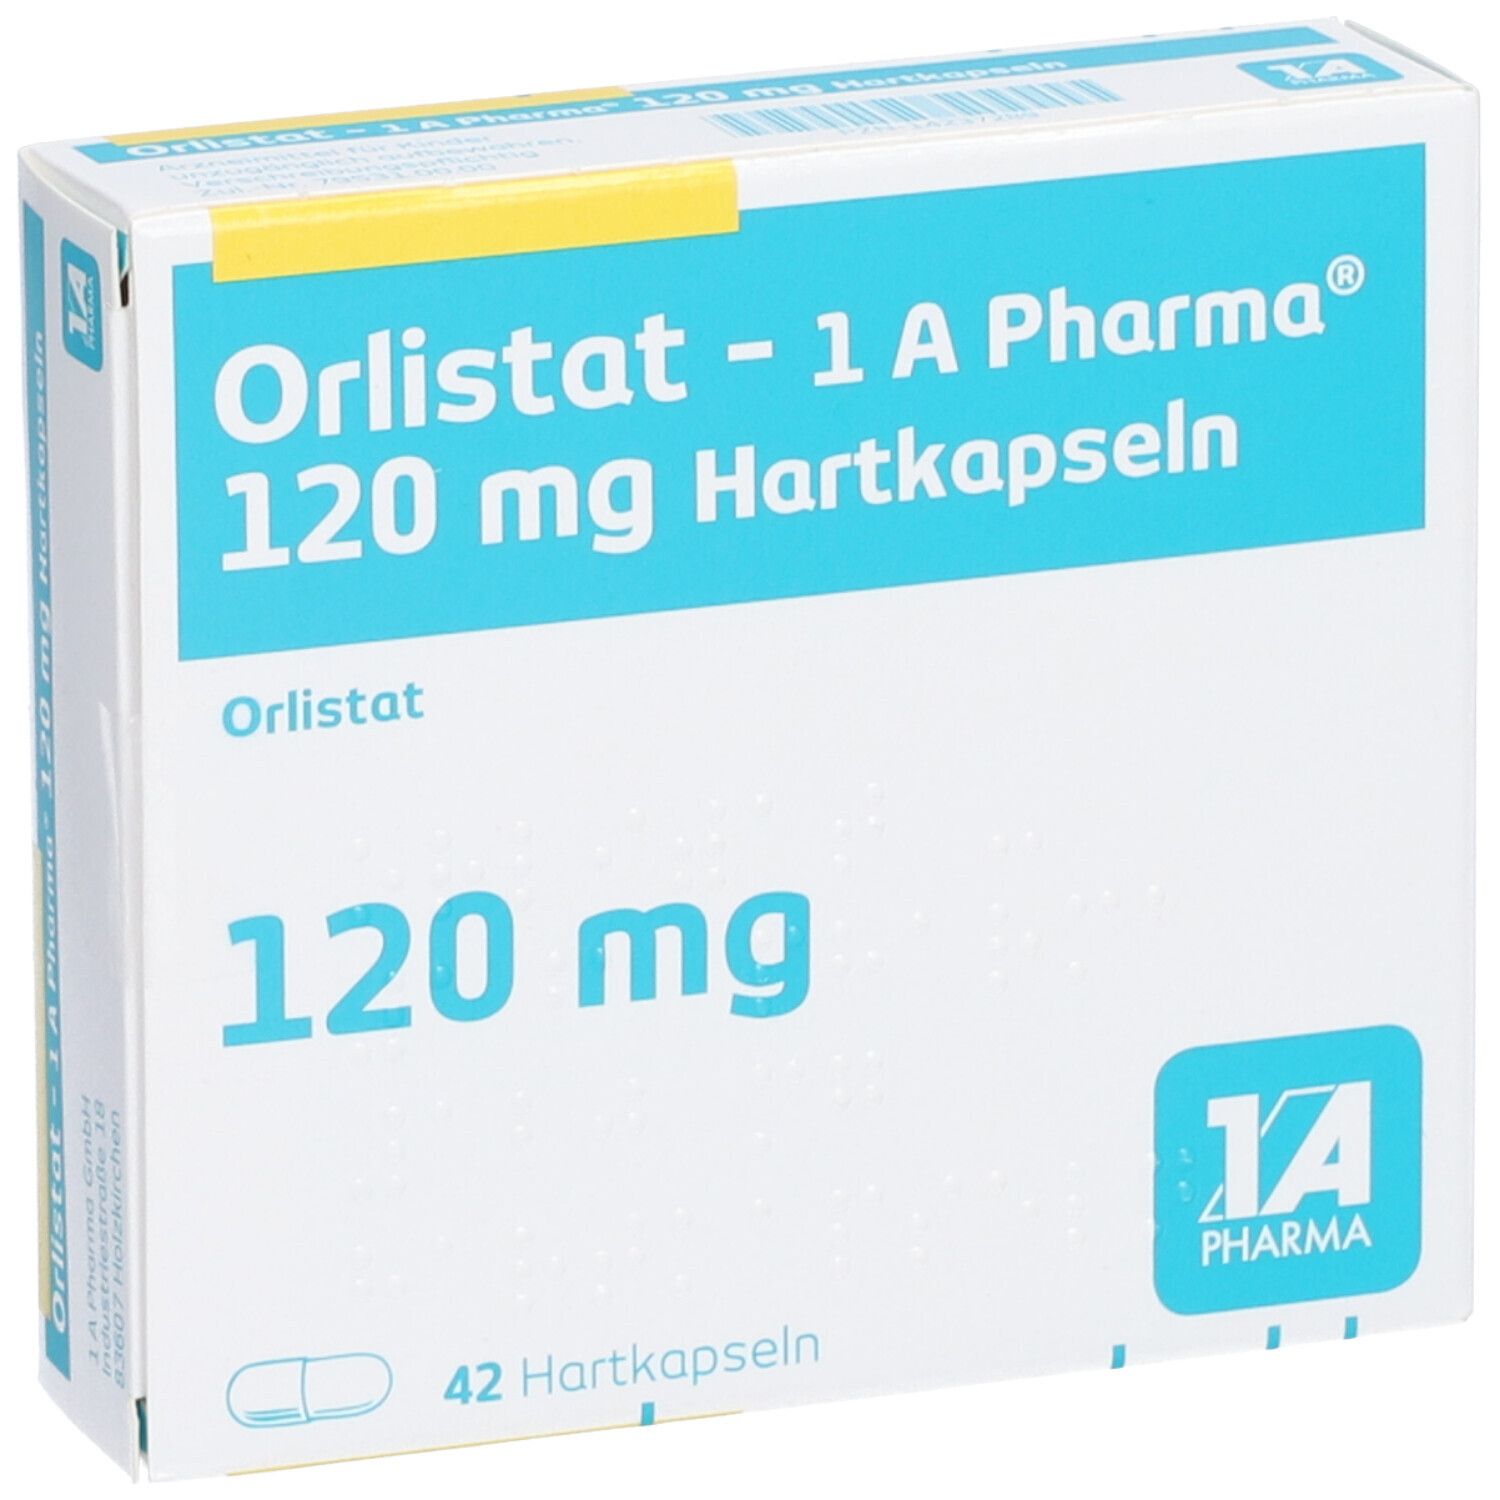 Orlistat 1A Pharma® 120Mg